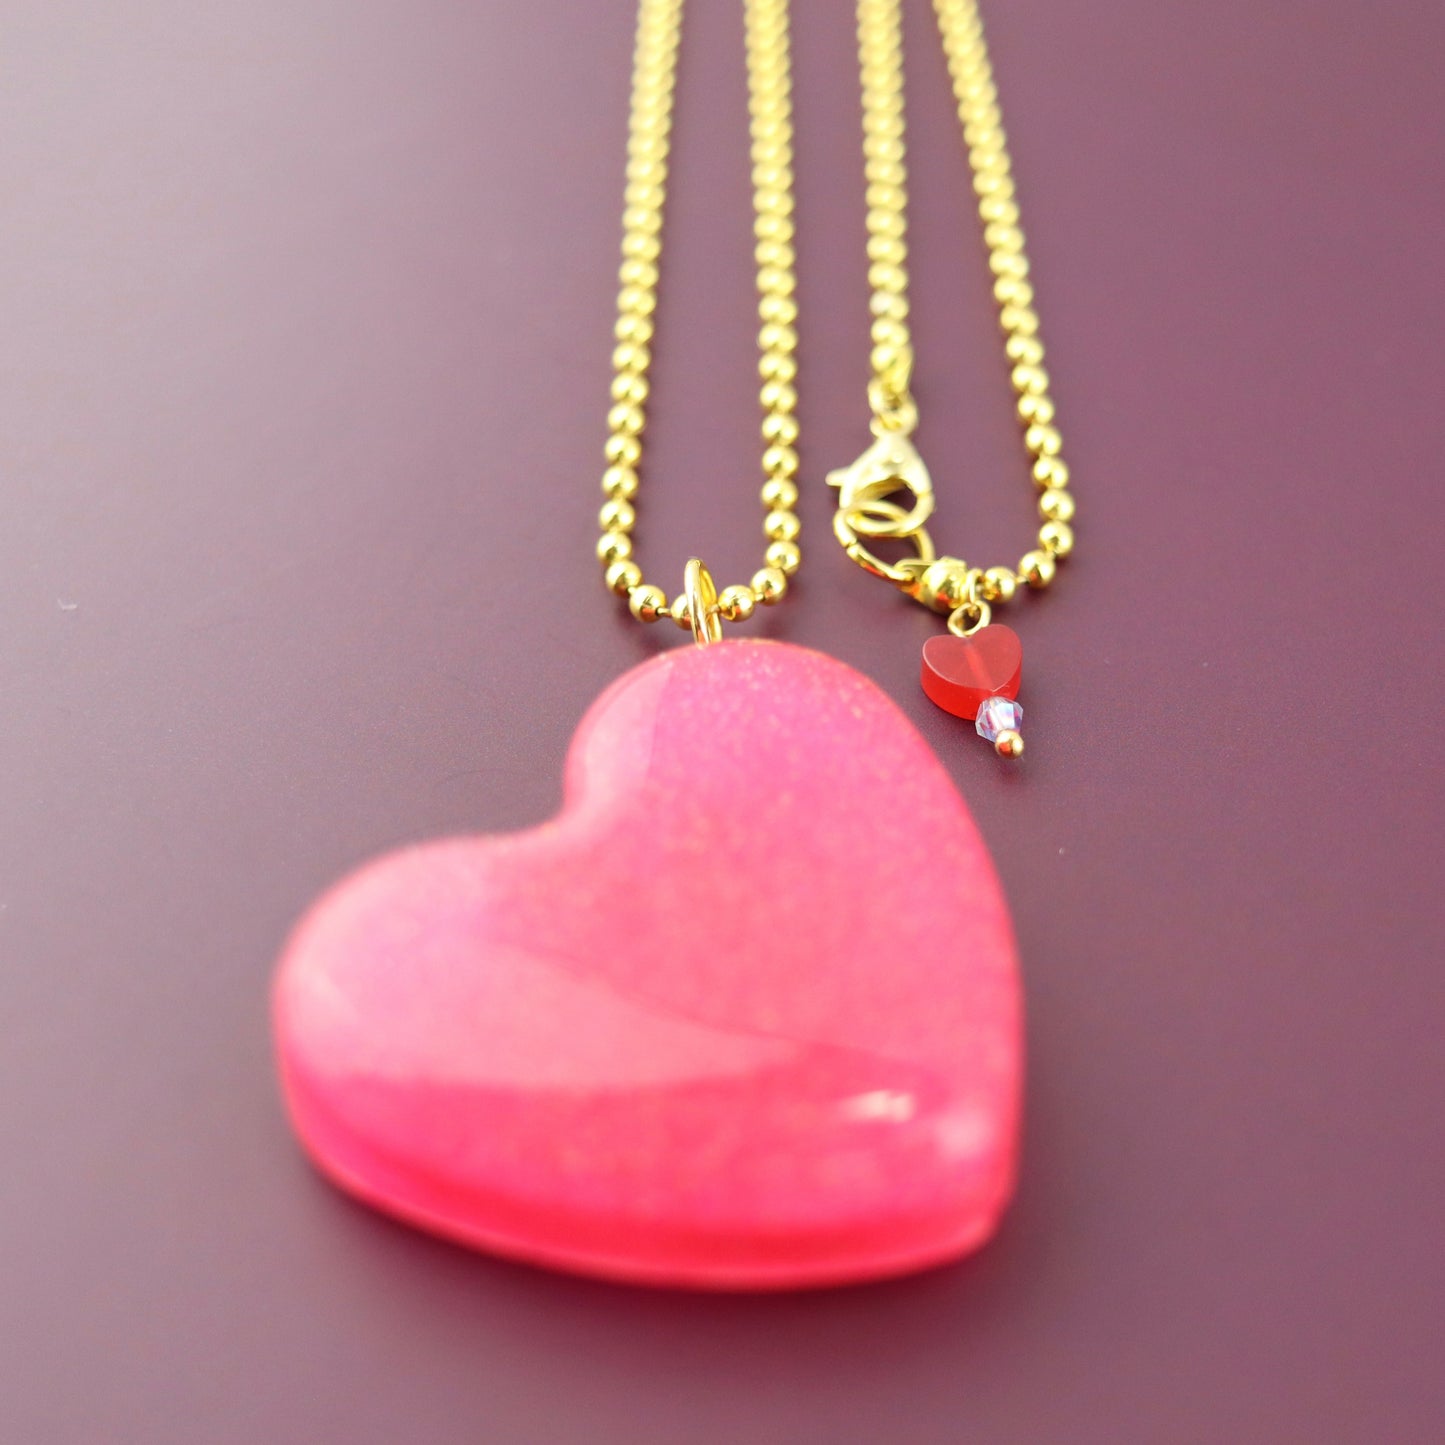 OG Heart Glitter Necklace – Pink Sparkle with Gold Hardware NGH-1006